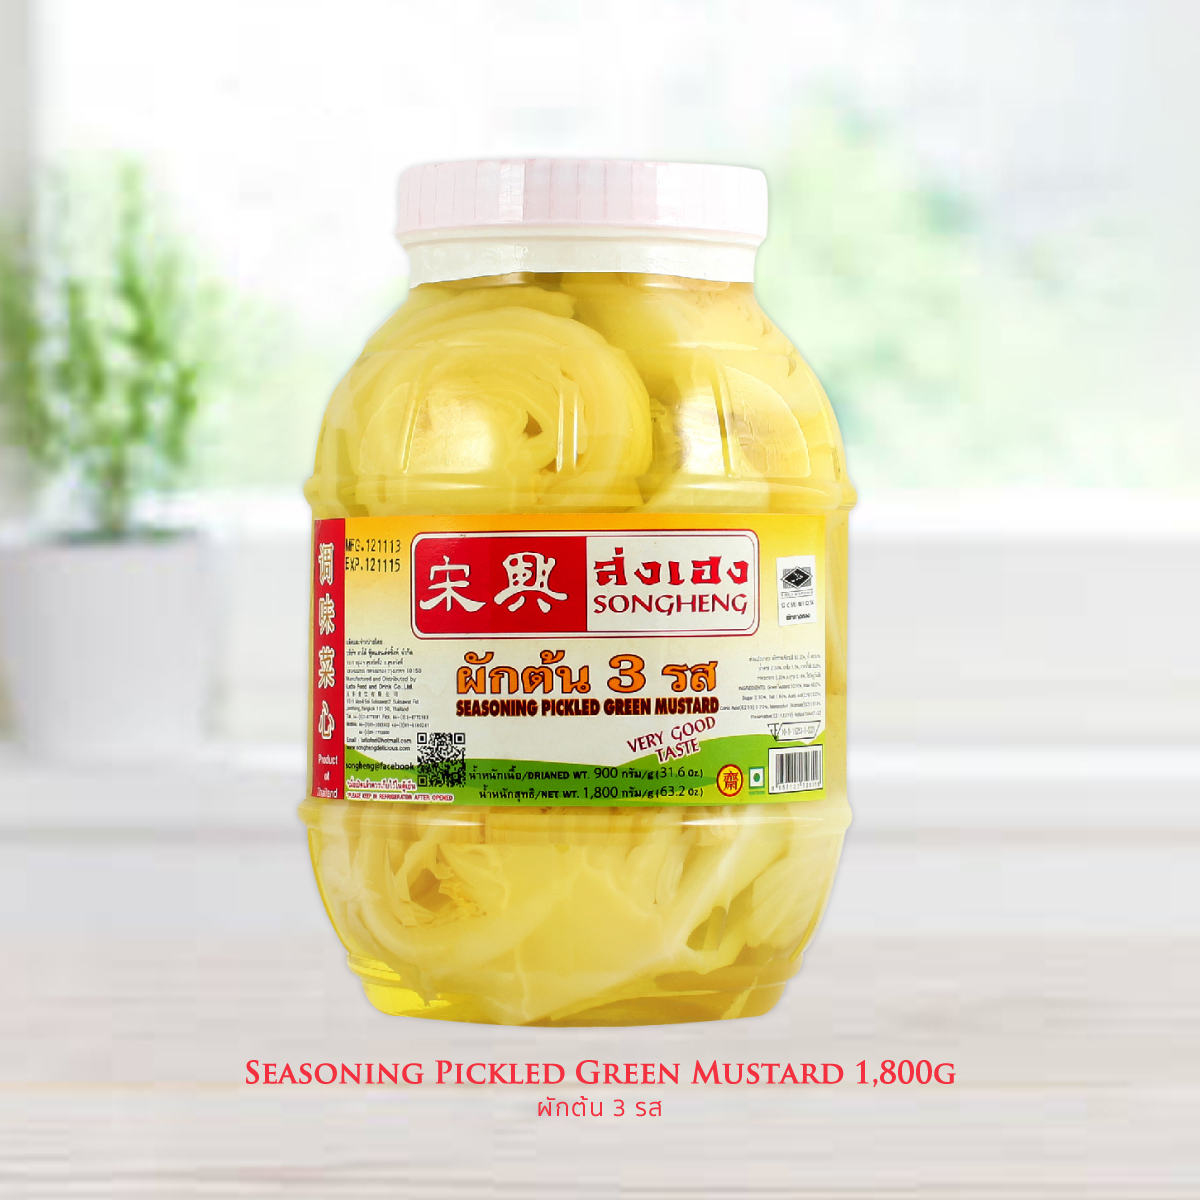 Seasoning Pickled Green Mustard 1,800g